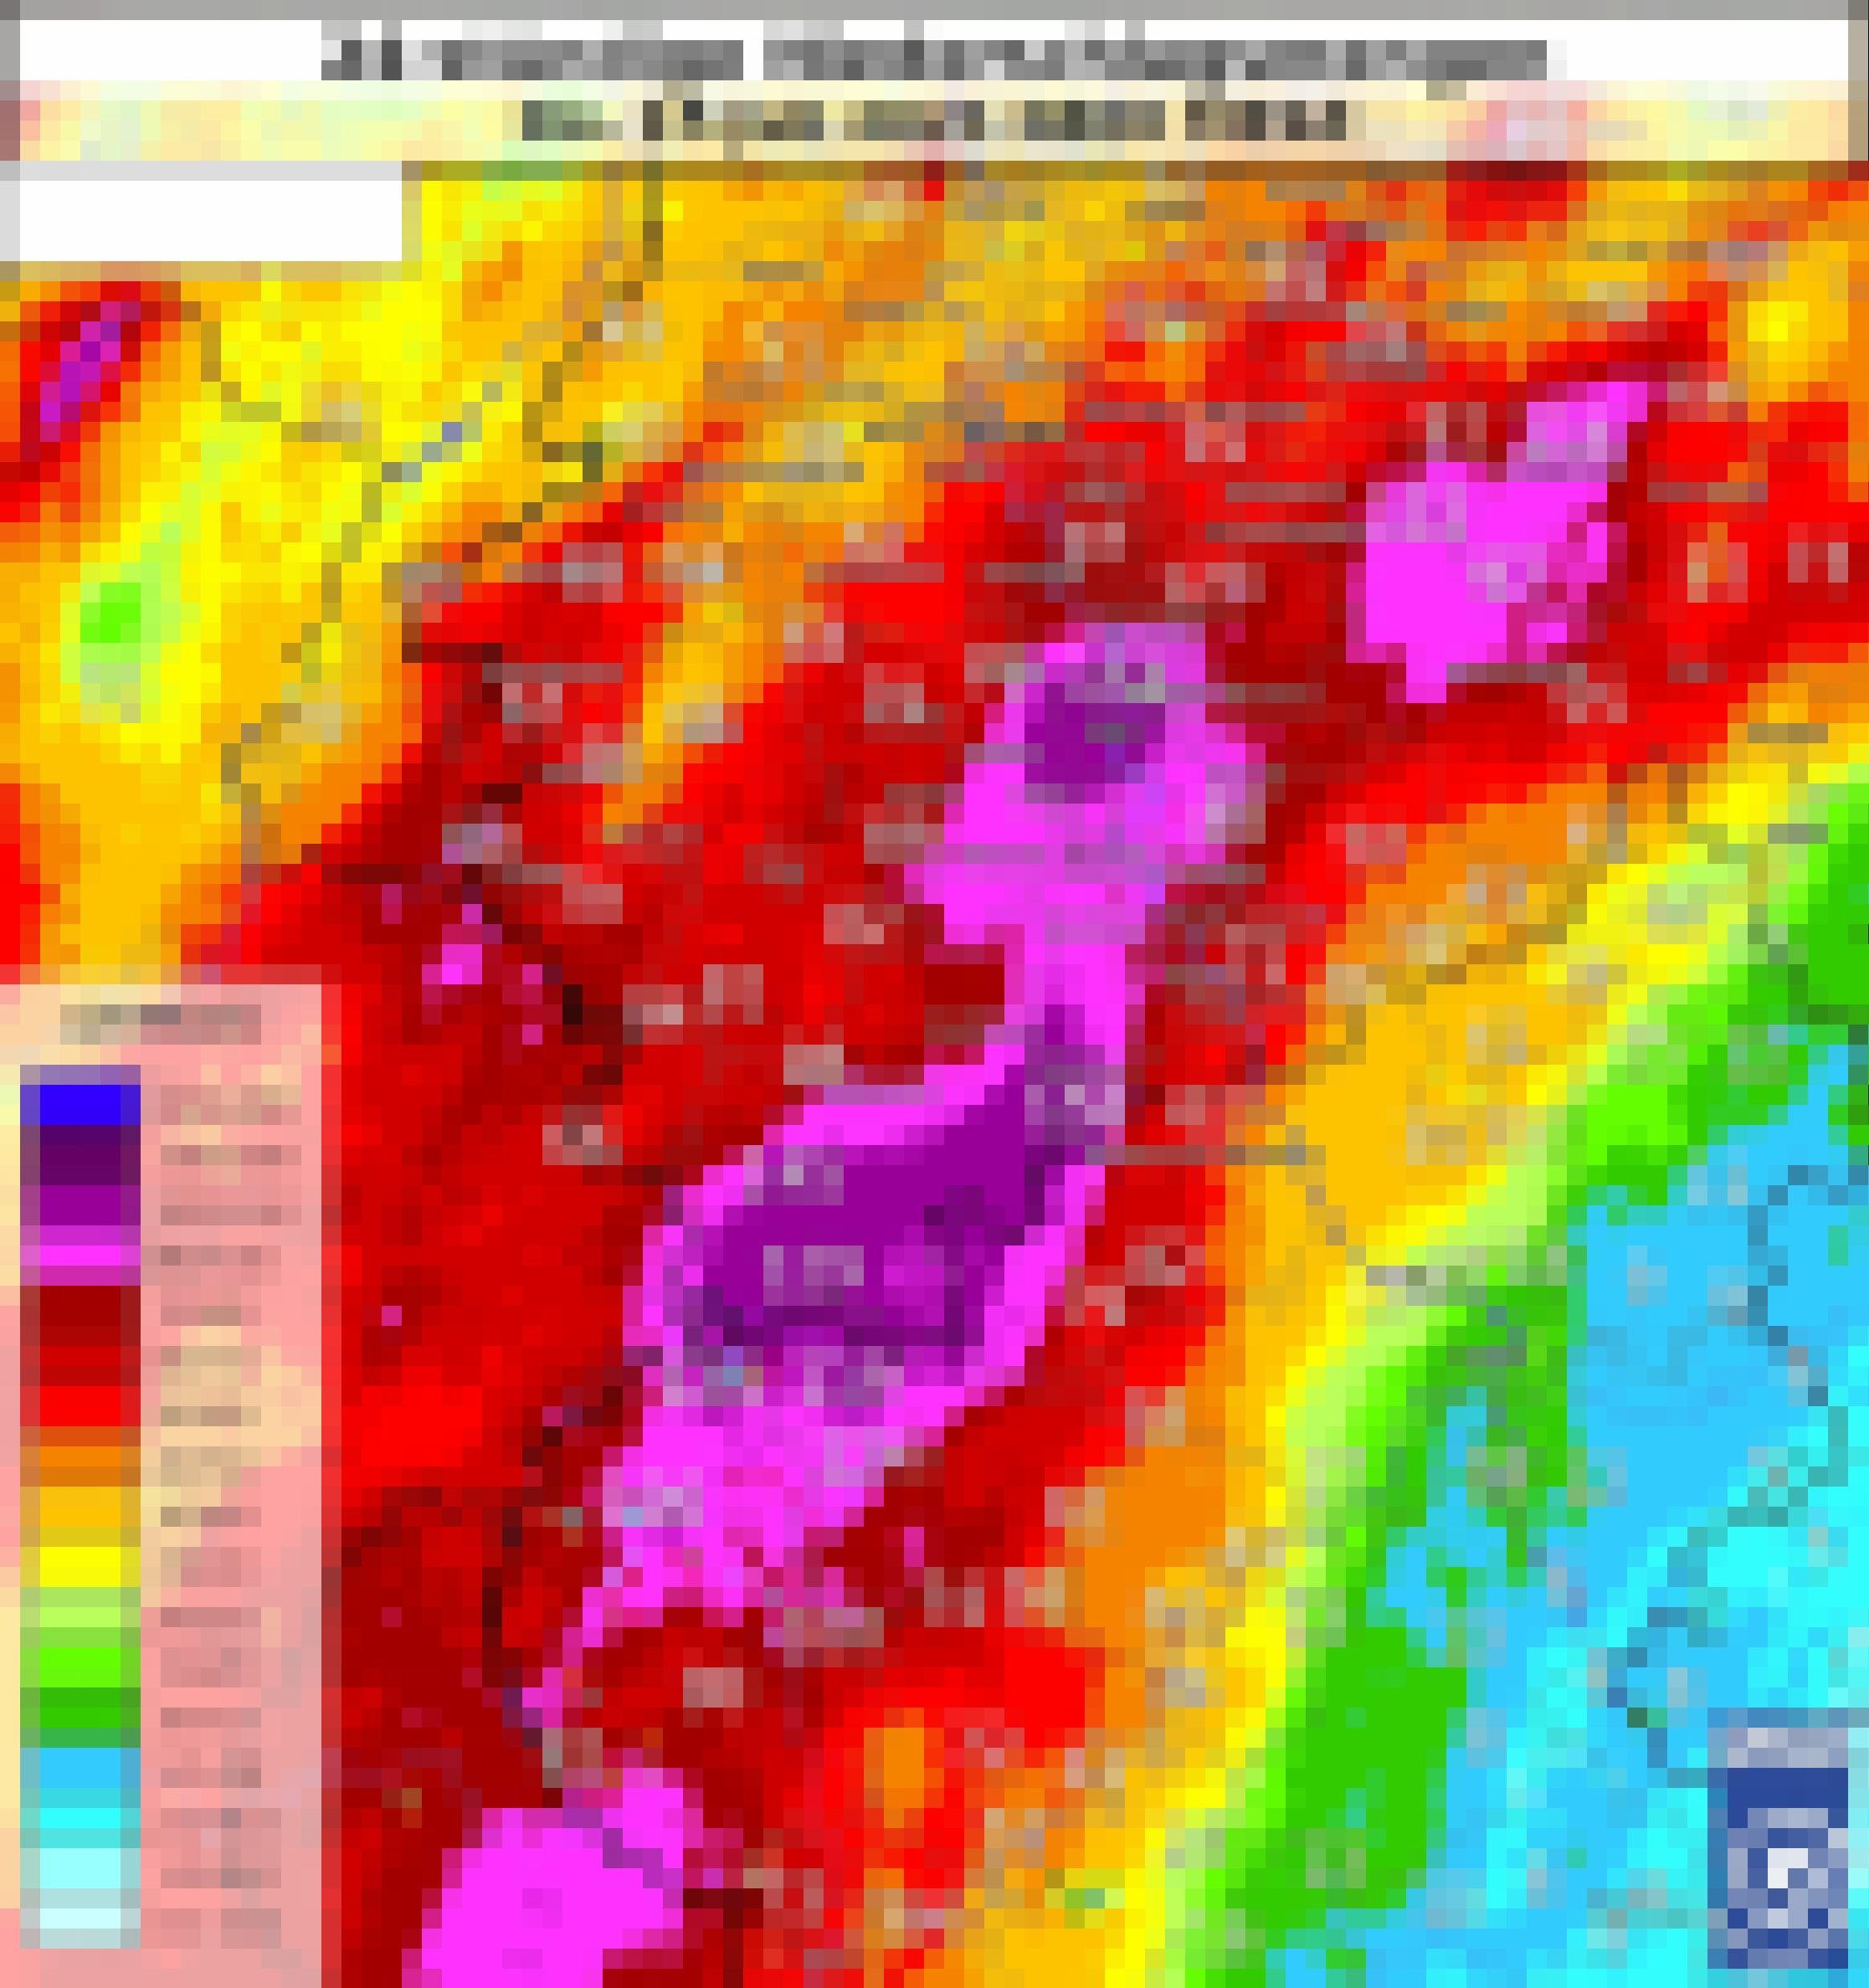 Karte der Region an Ahr und Erft, in der mit einer Farbskala die Regenmengen in den 24 Stunden vor 8 Uhr am 15. Juli 2021 eingetragen sind. Laut Farbskala am Rand steht der violette Bereich für  150 bis 200 Millimeter Niederschläge.